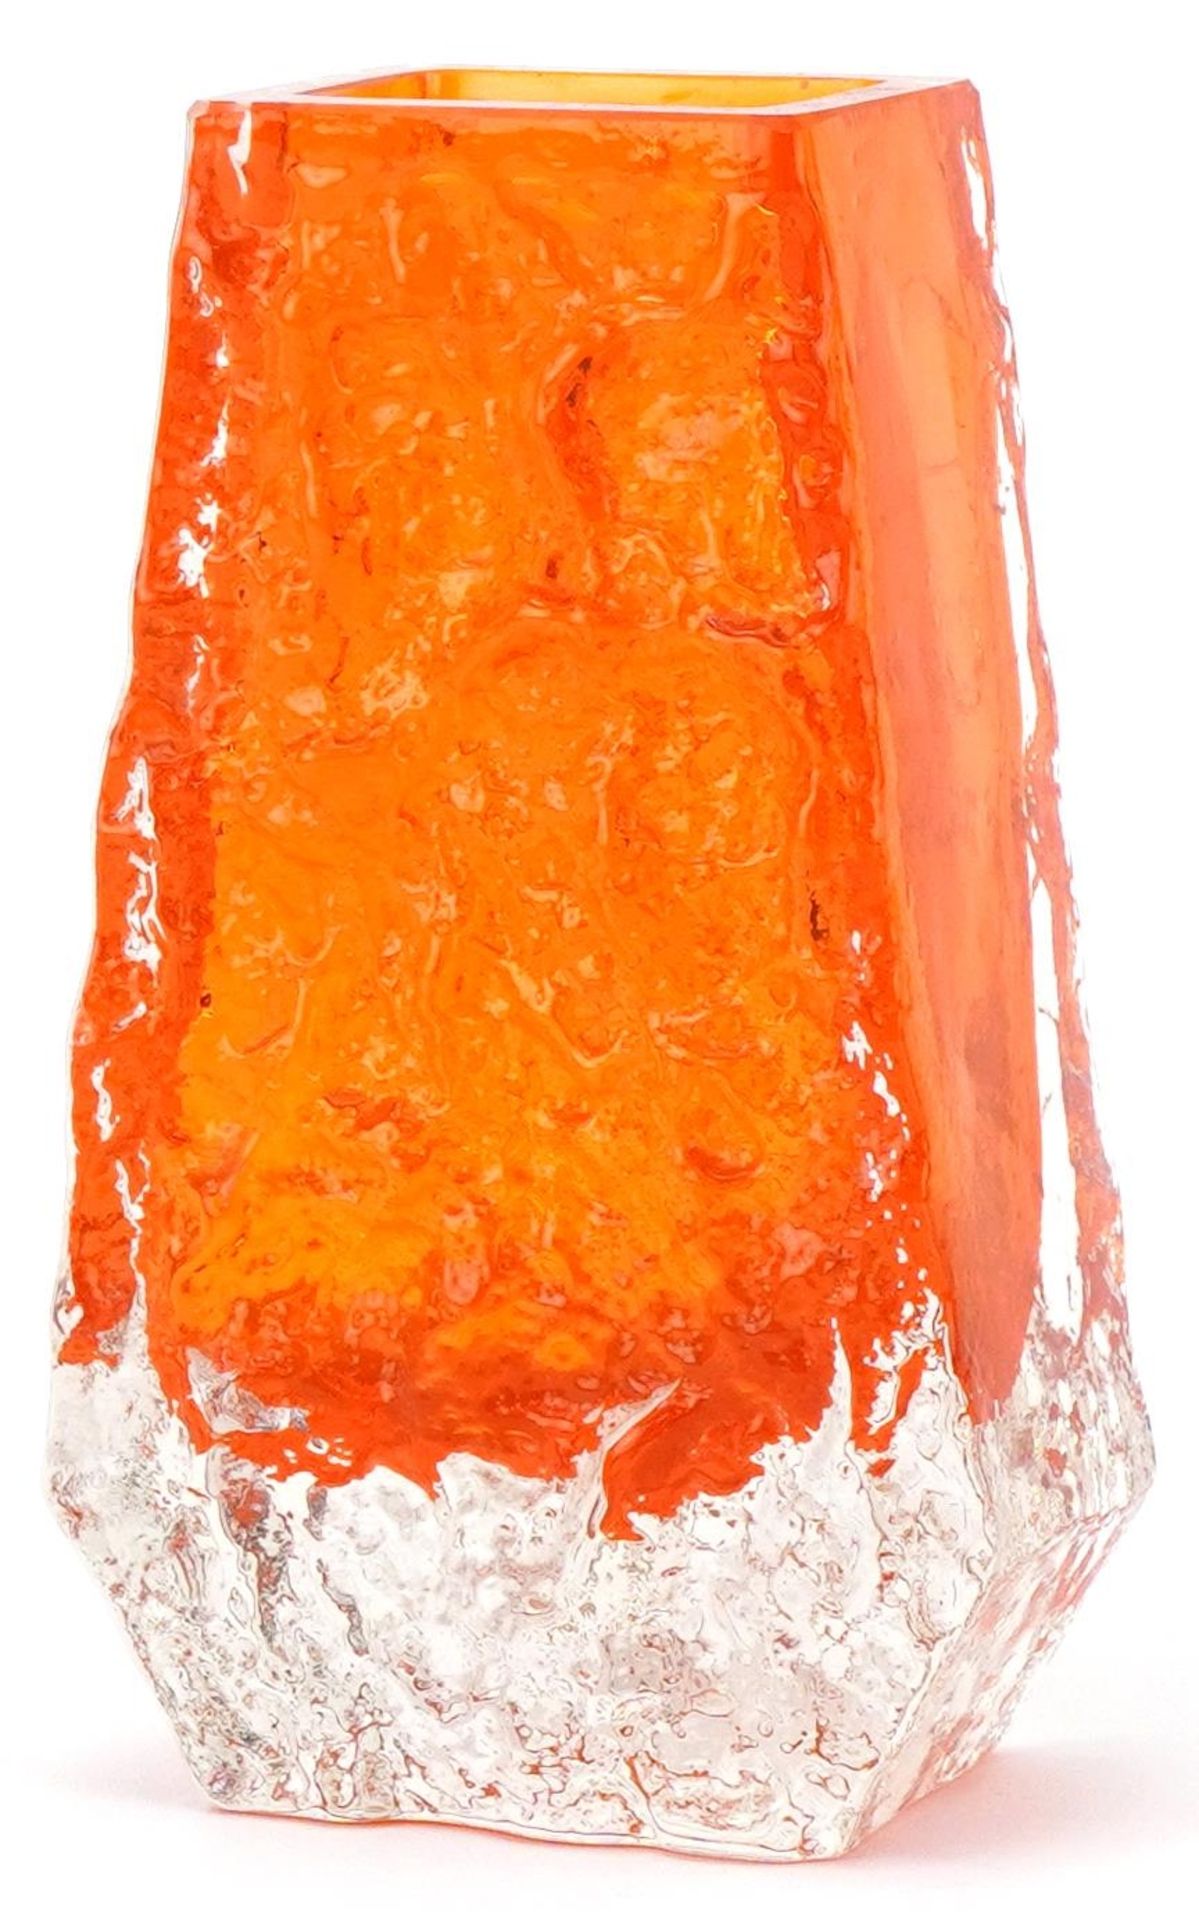 Whitefriars orange bark glass vase, 13cm high - Bild 2 aus 3